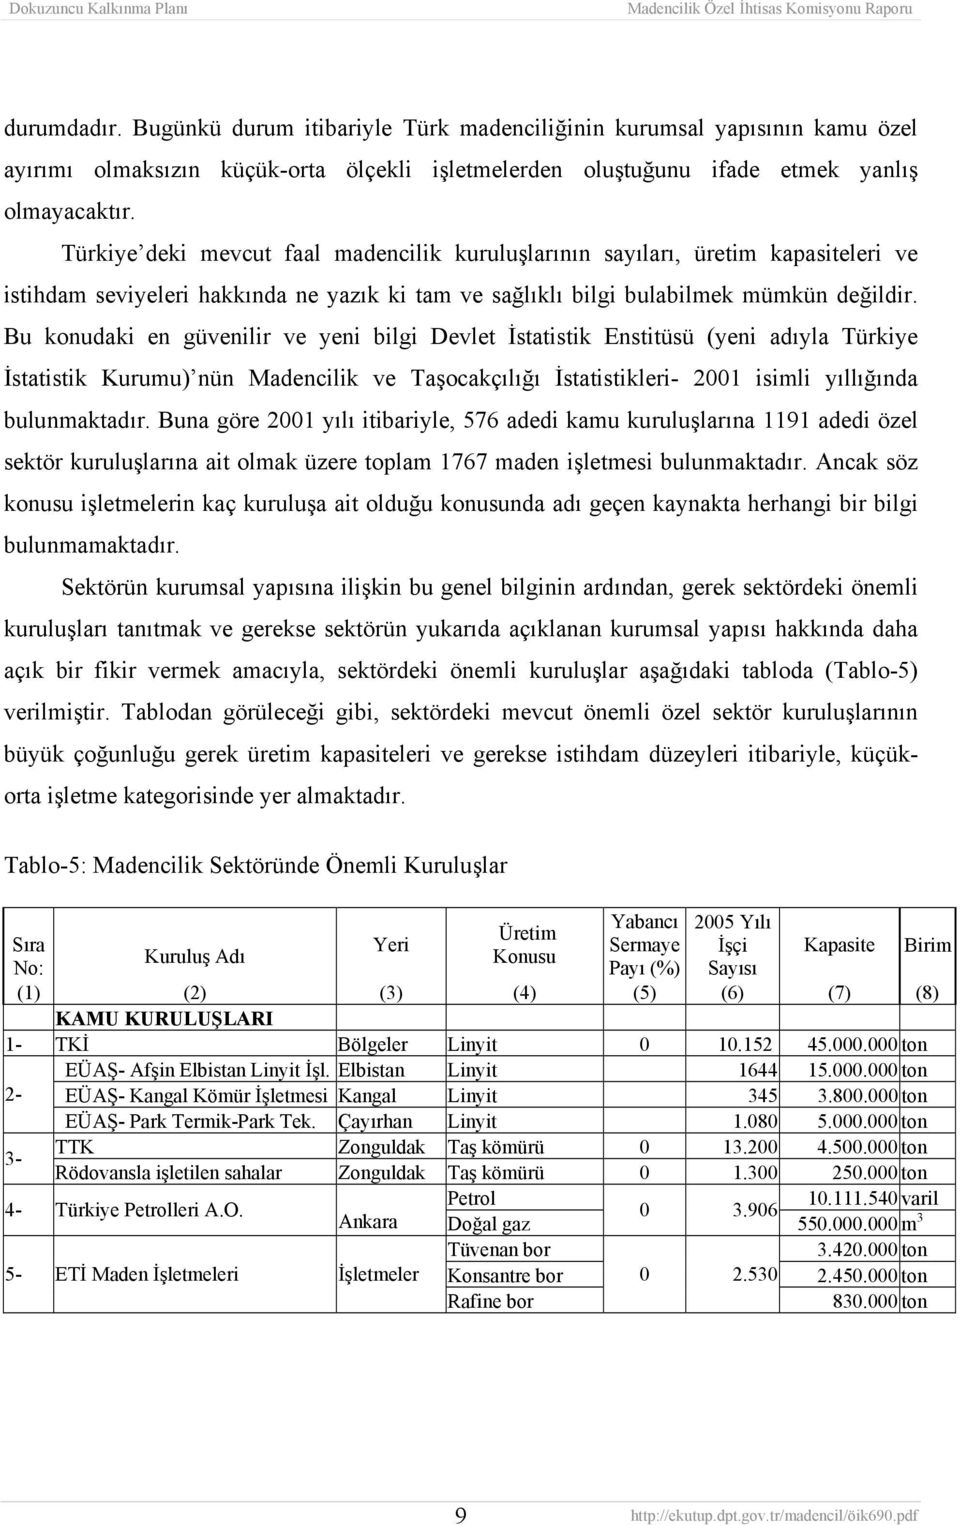 Bu konudaki en güvenilir ve yeni bilgi Devlet İstatistik Enstitüsü (yeni adıyla Türkiye İstatistik Kurumu) nün Madencilik ve Taşocakçılığı İstatistikleri- 2001 isimli yıllığında bulunmaktadır.